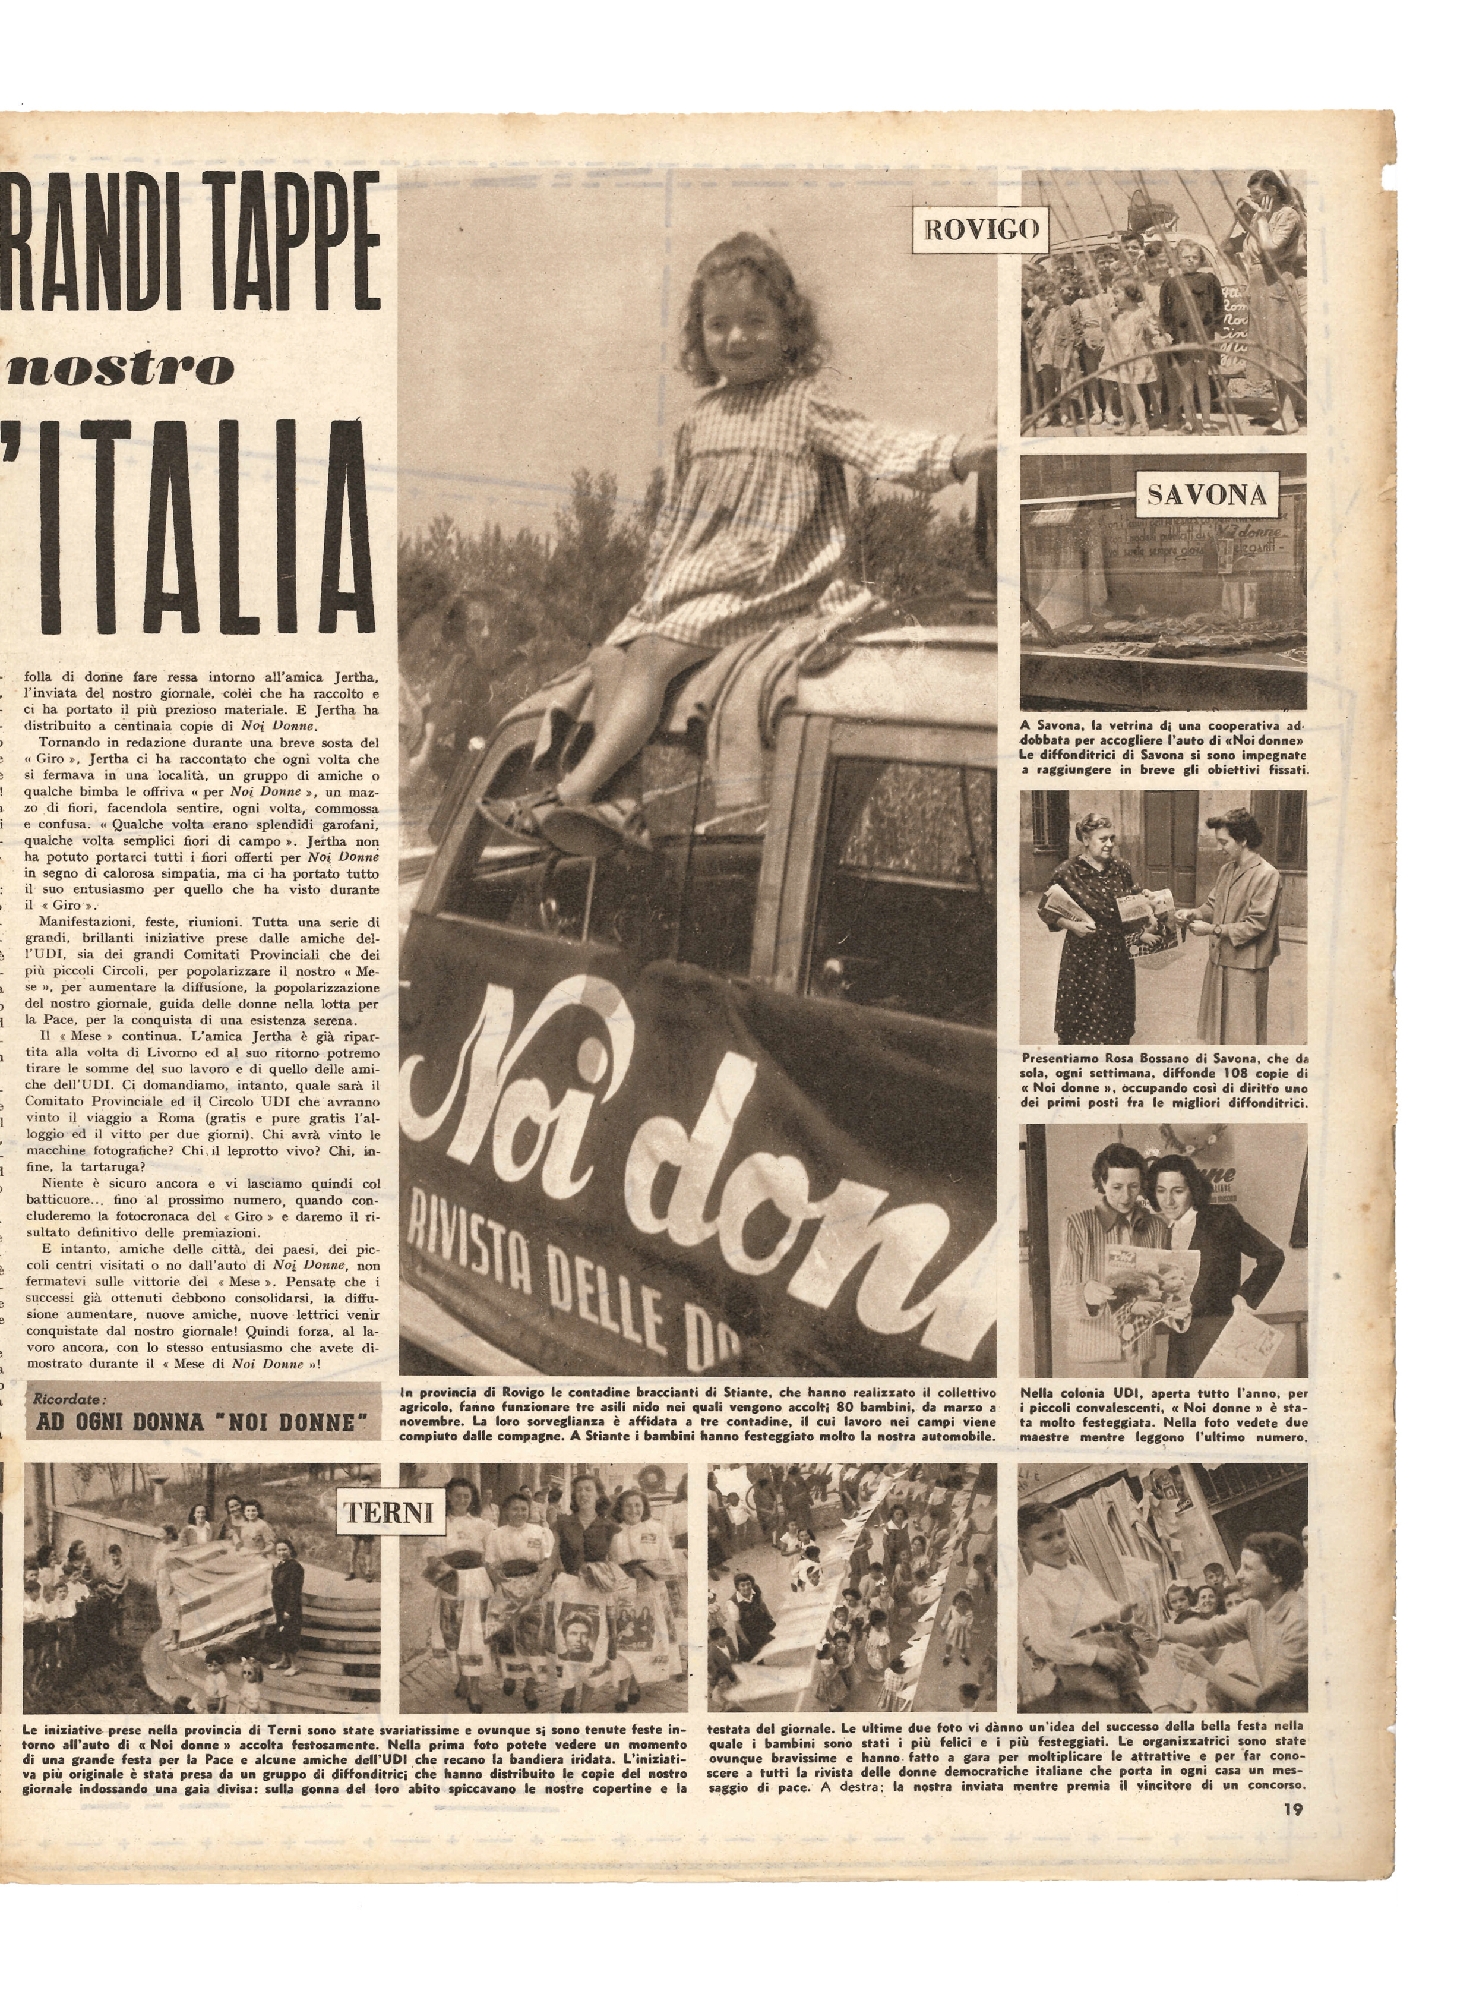 Foto: Le ragazze d'Italia a Roma/Le lavoratrici di tabacco/Il Giro d'Italia di Noi Donne 